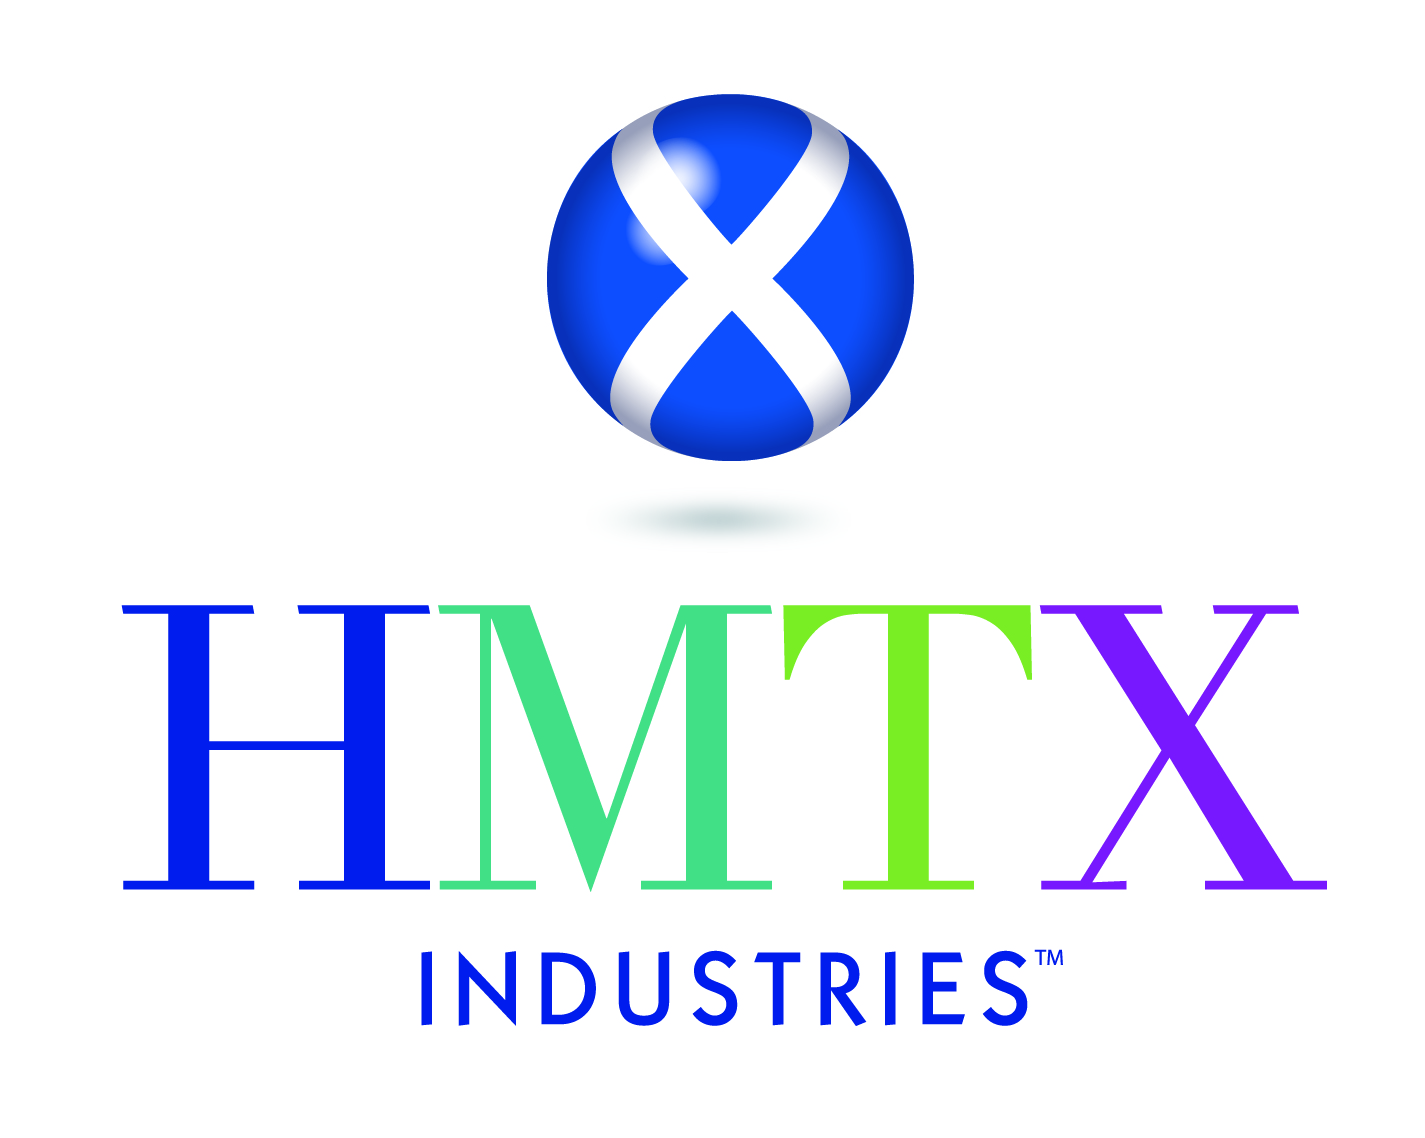 HMTX Industries